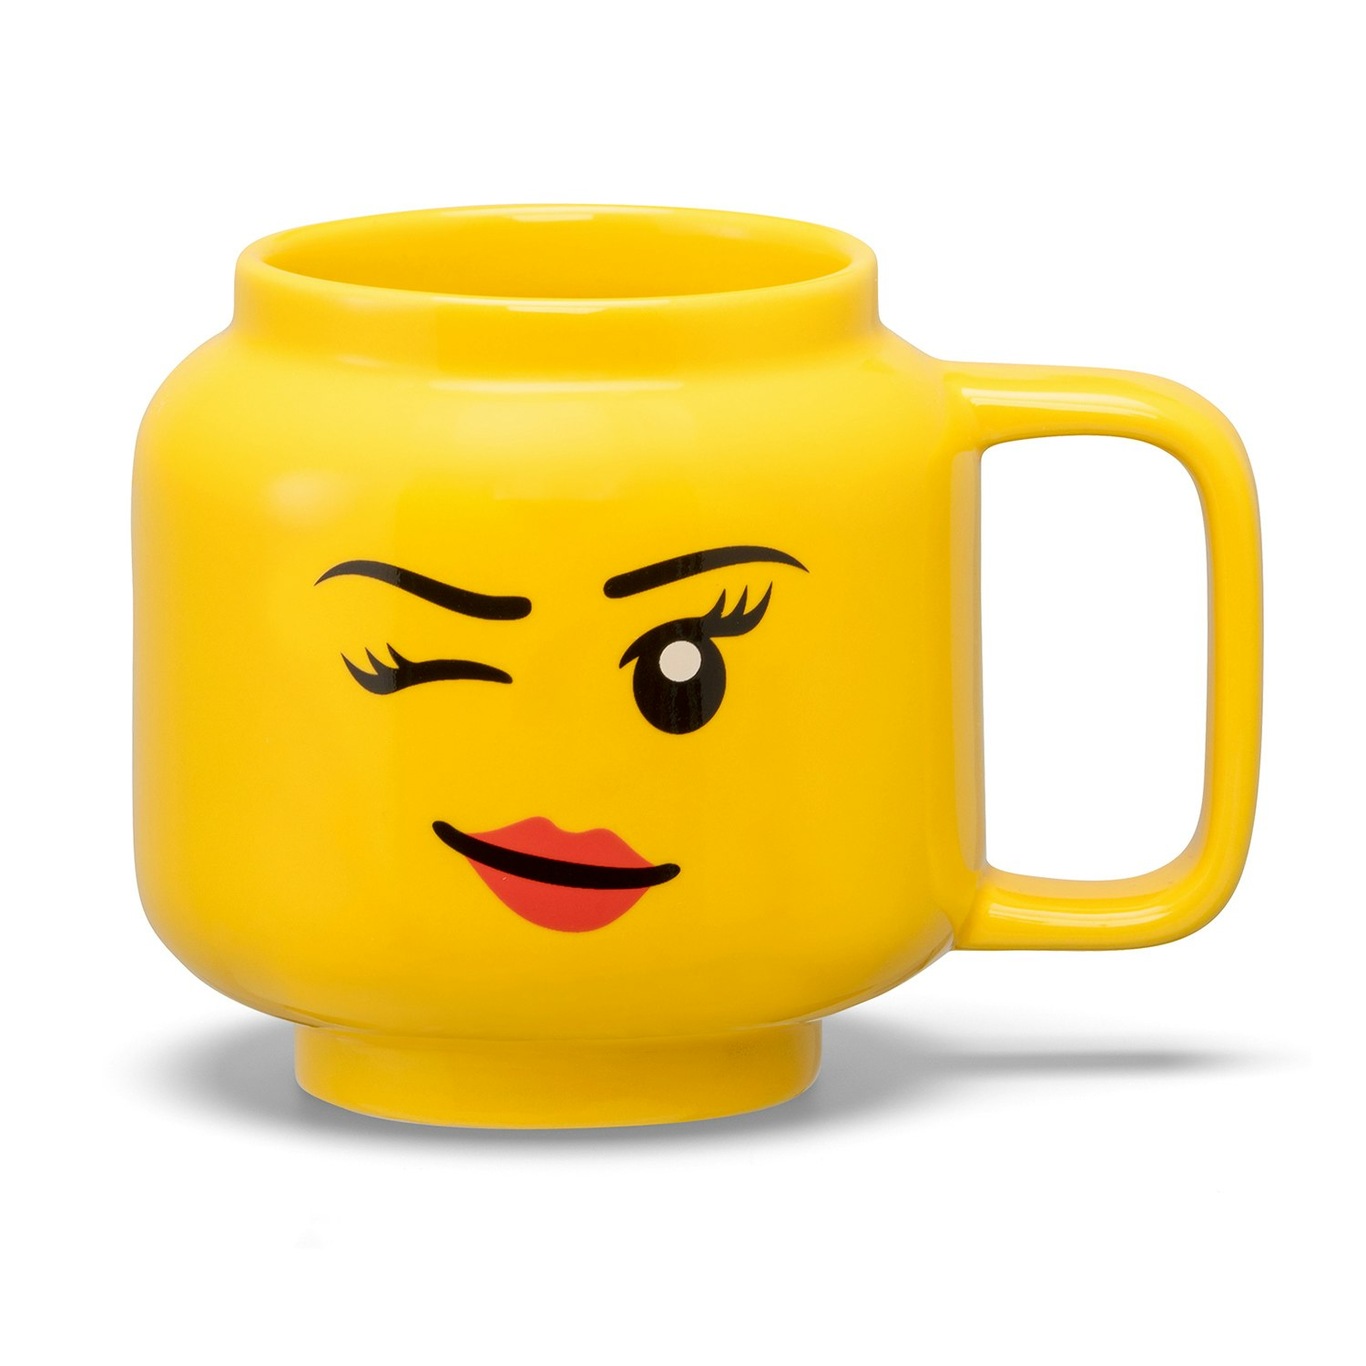 LEGO Mok Winking Girl S, 25 cl